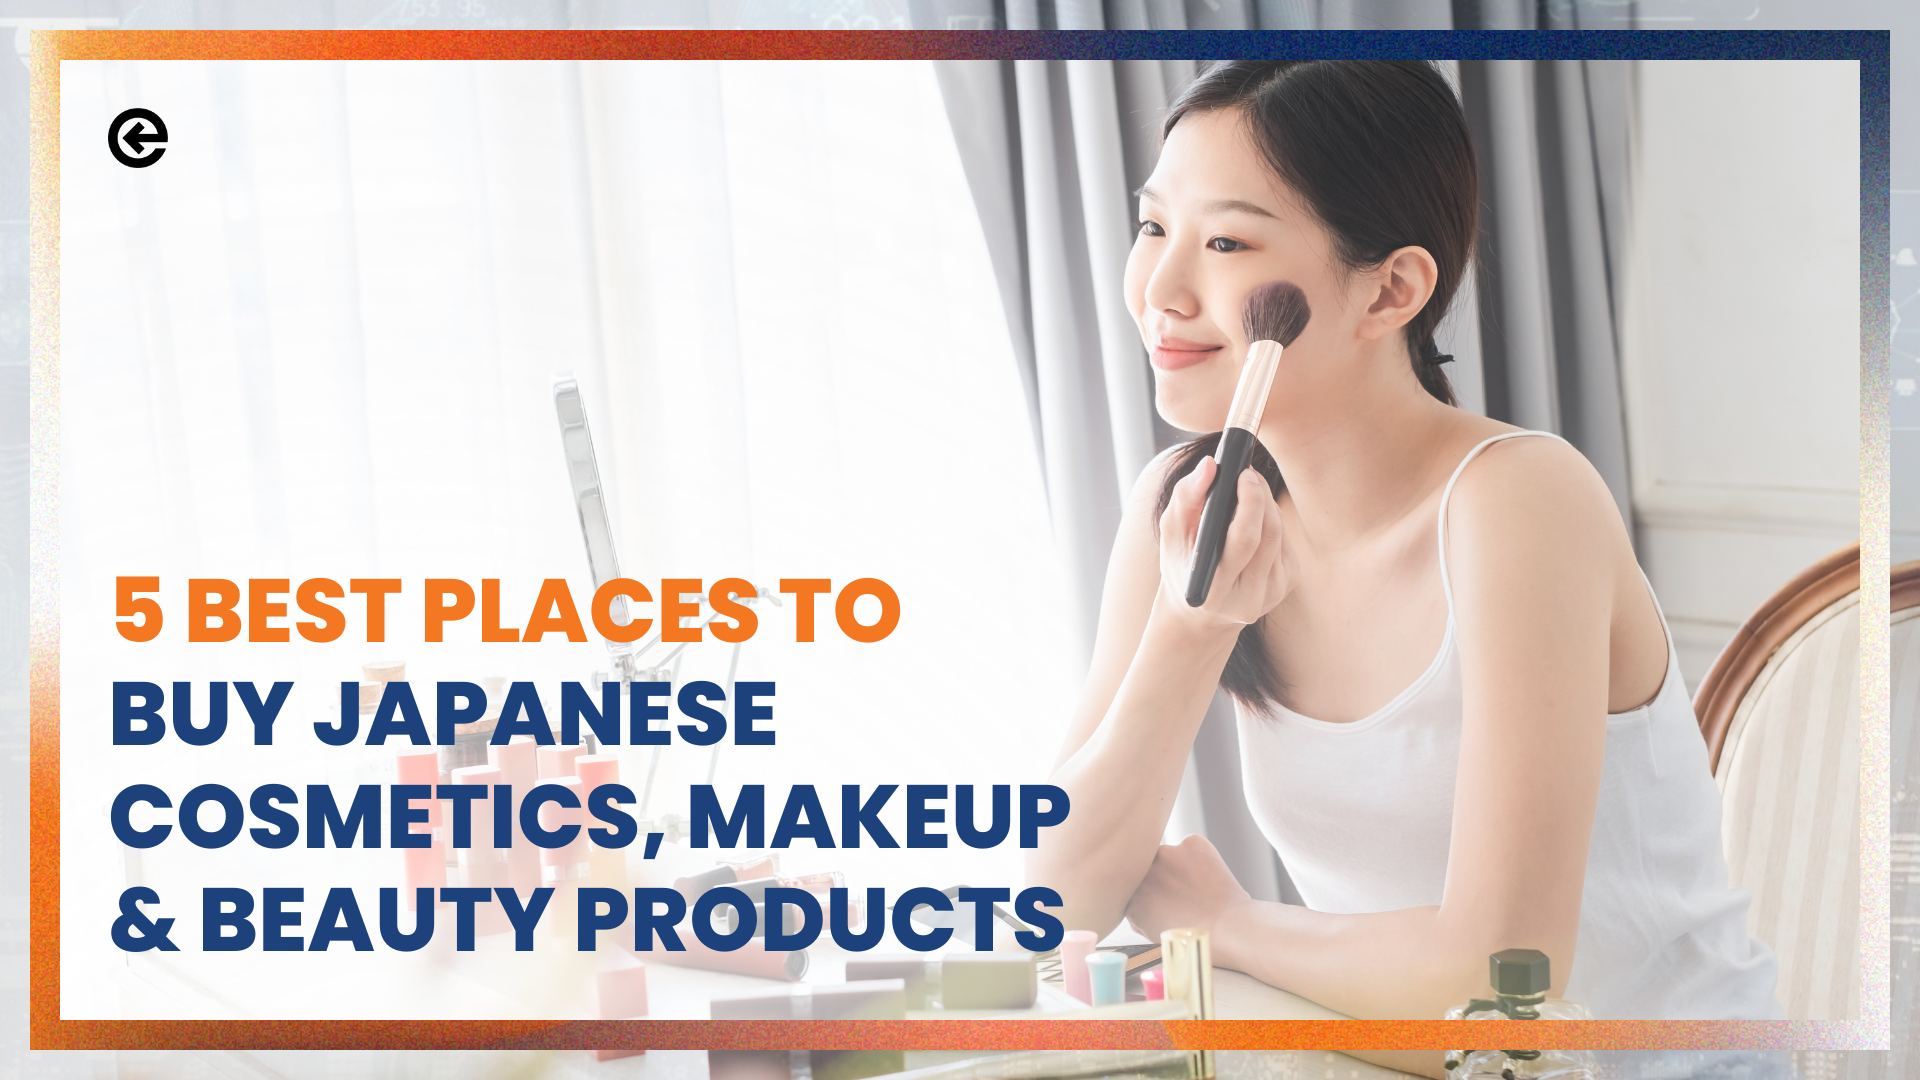 购买日本化妆品、彩妆和美容产品的5个最佳地点